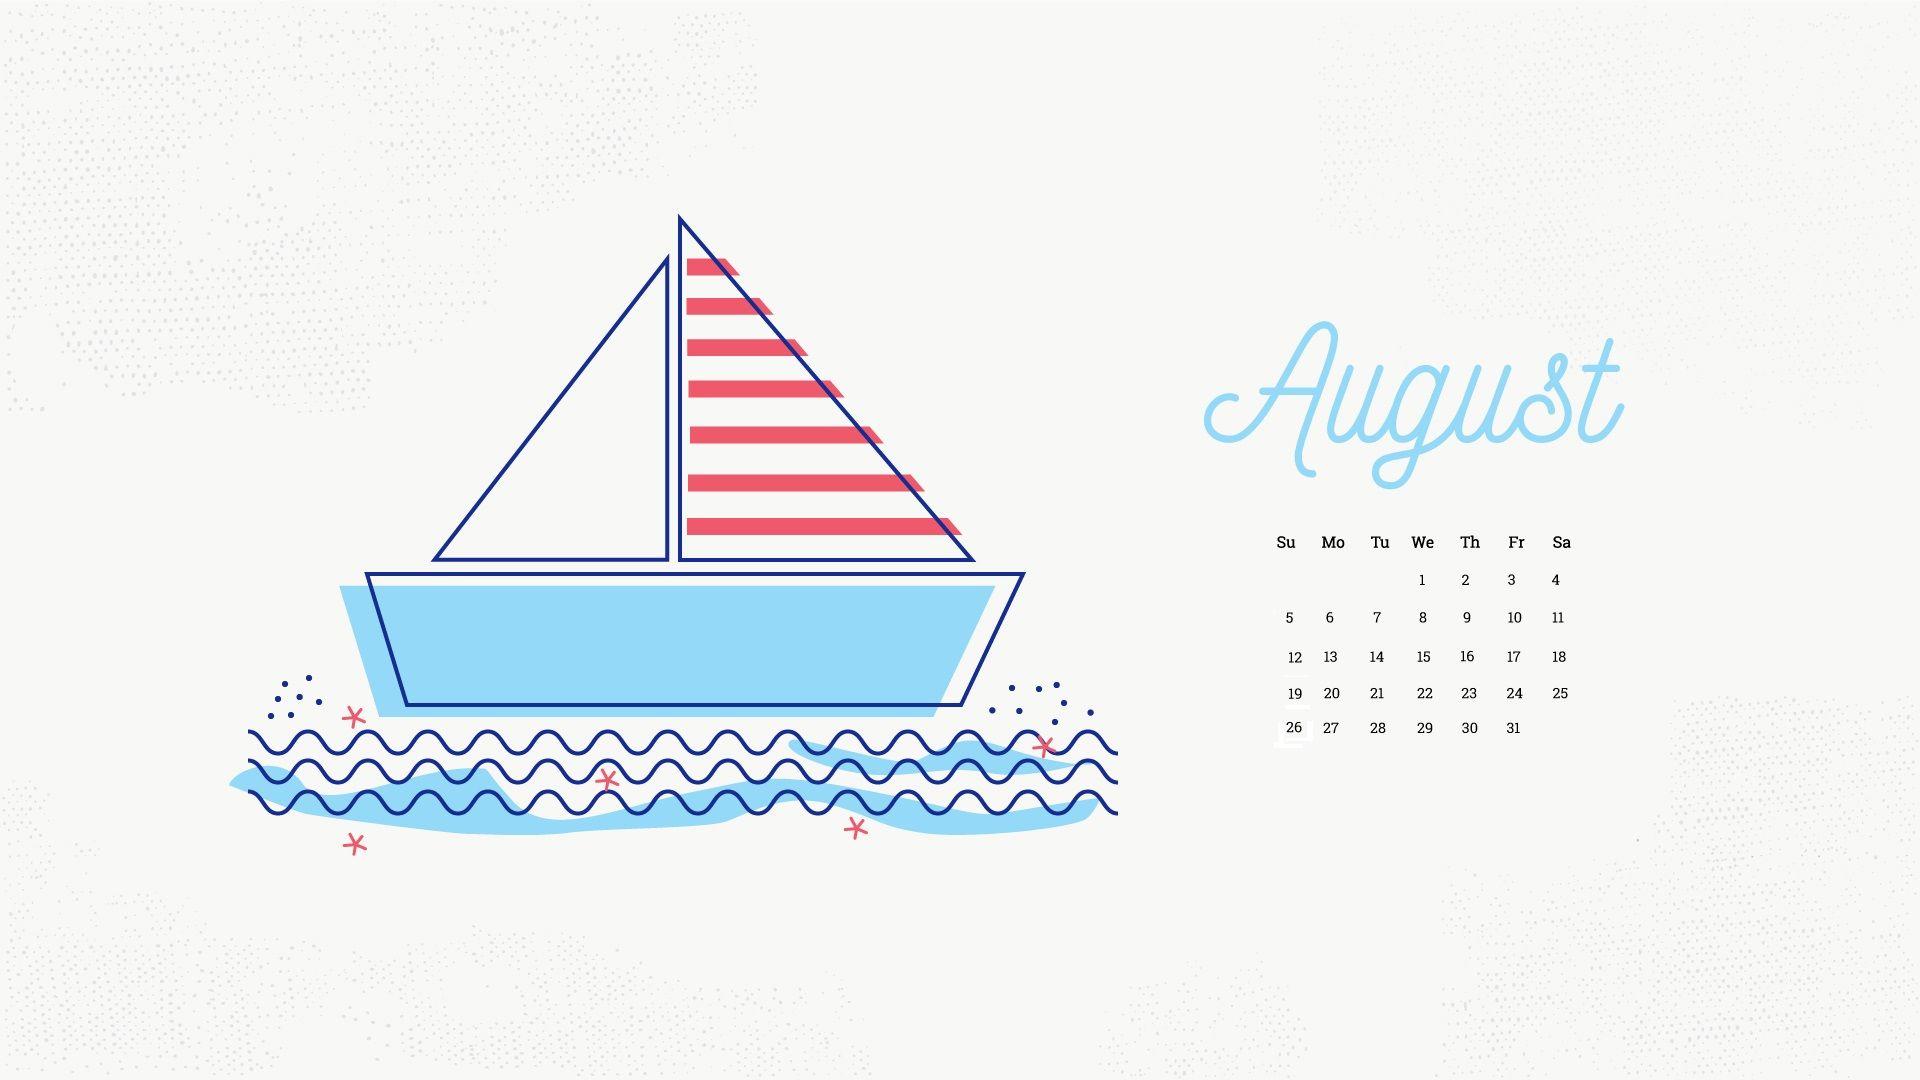 August 2018 Calendar Wallpaper